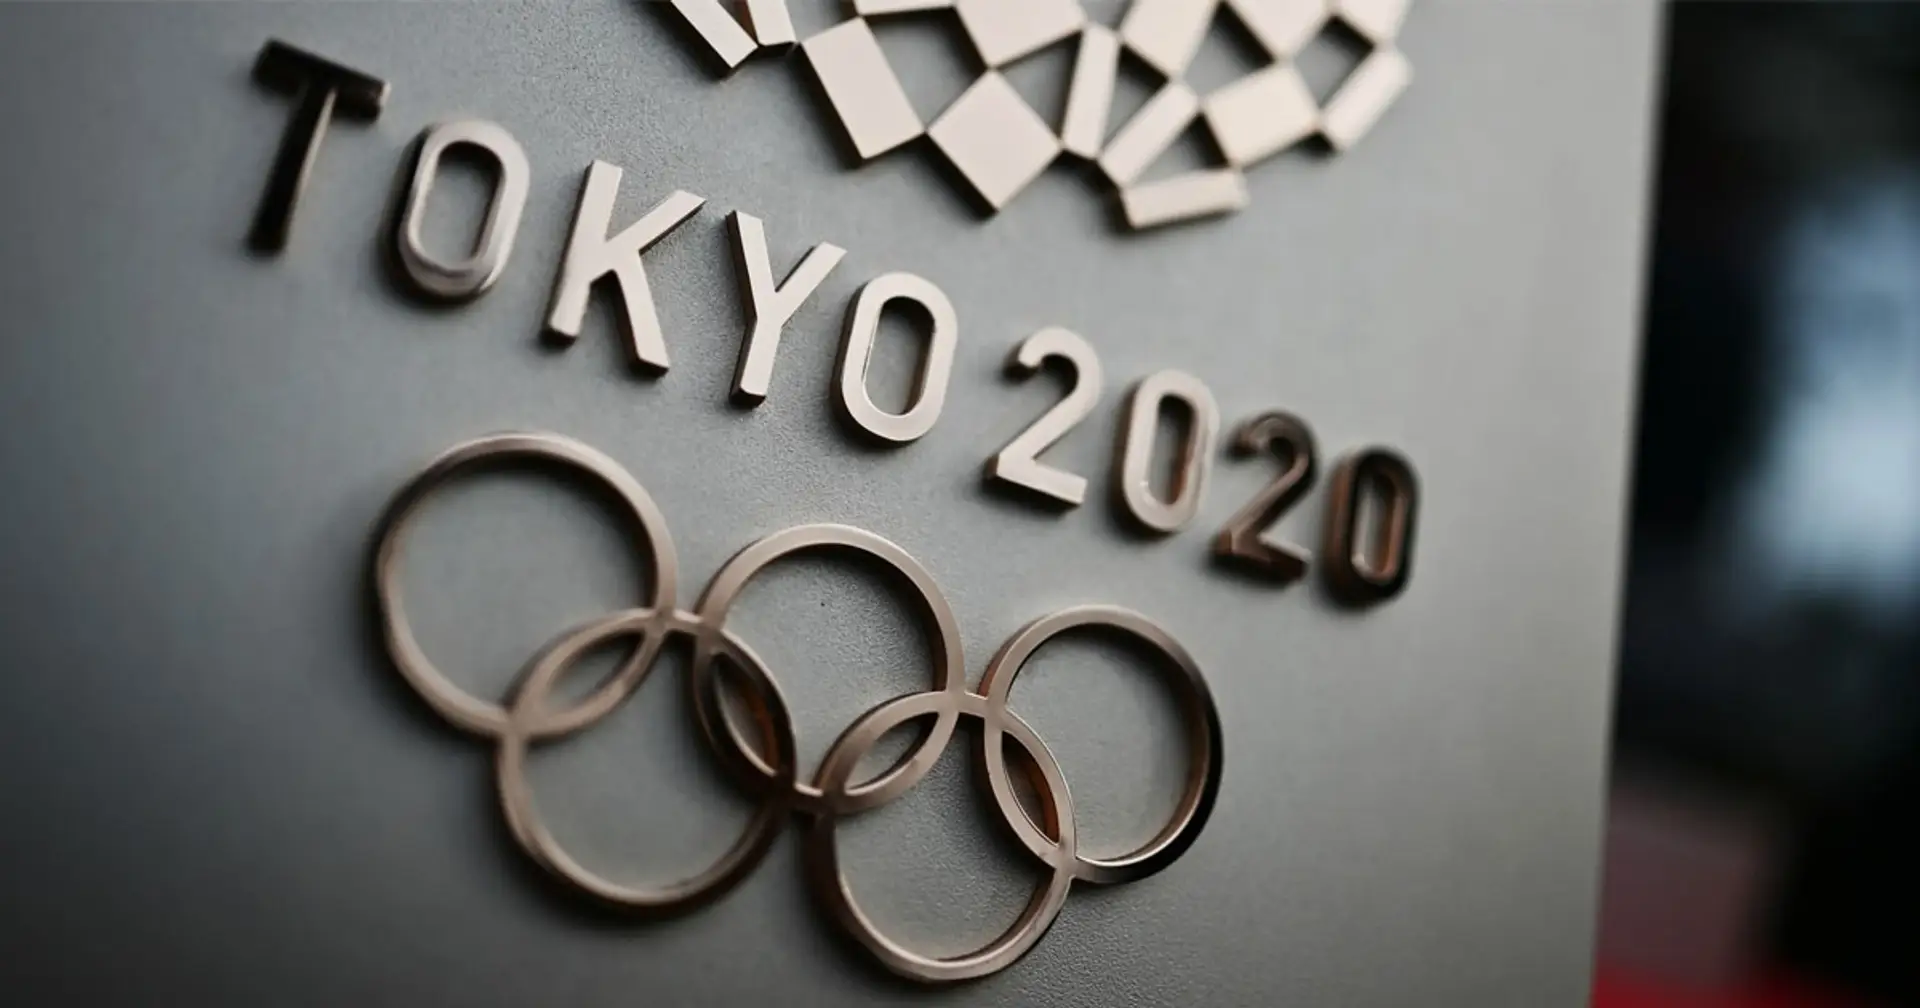 Les Jeux olympiques de Tokyo devraient débuter le 23 juillet 2021, décision officielle à venir dans la semaine